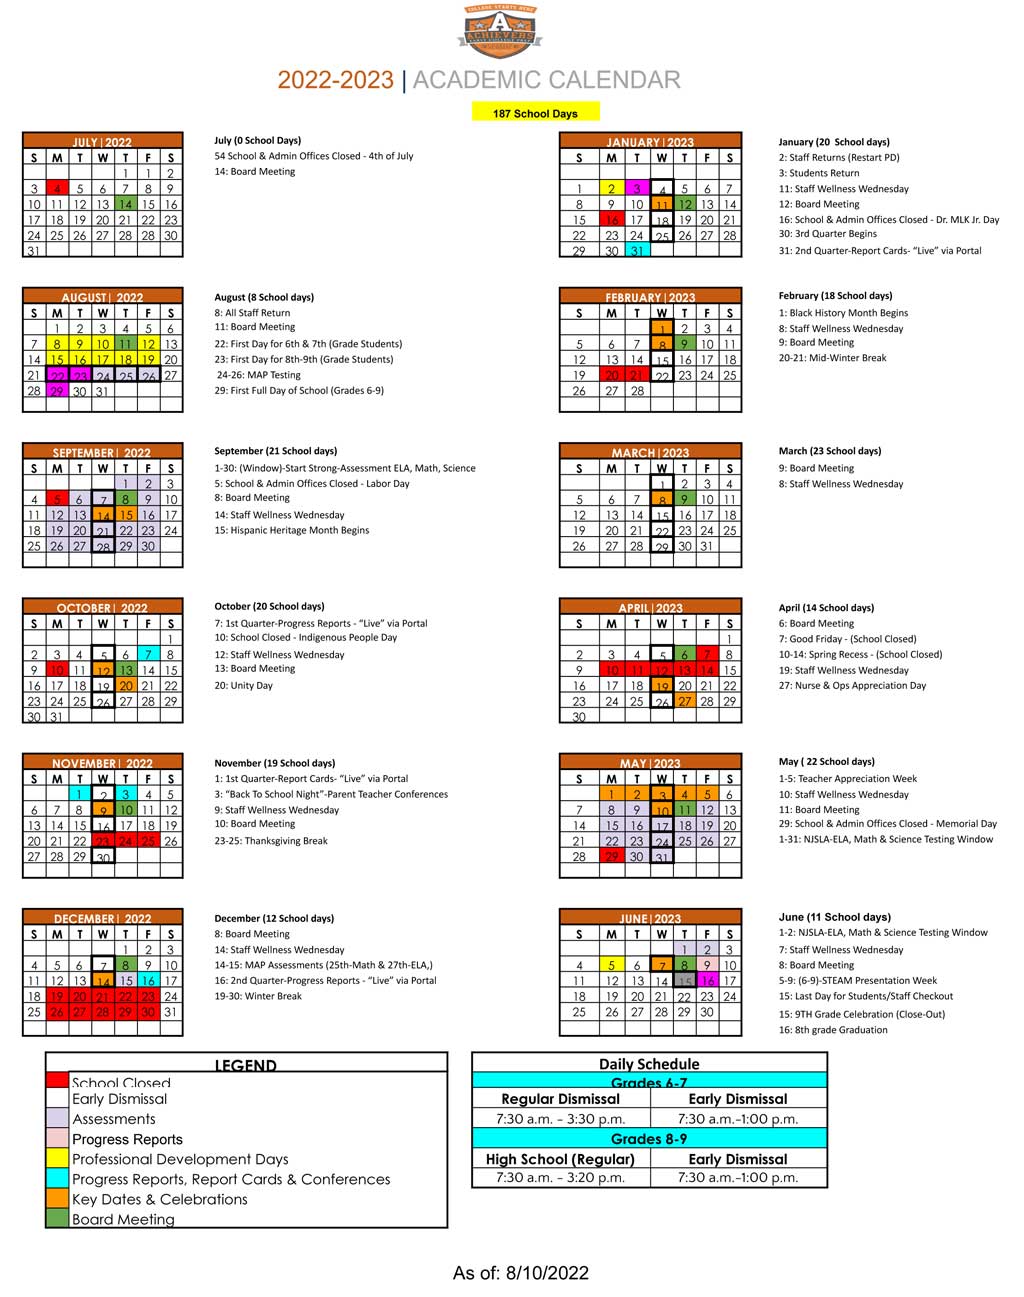 AECP School Calendar - 2022 - 2023